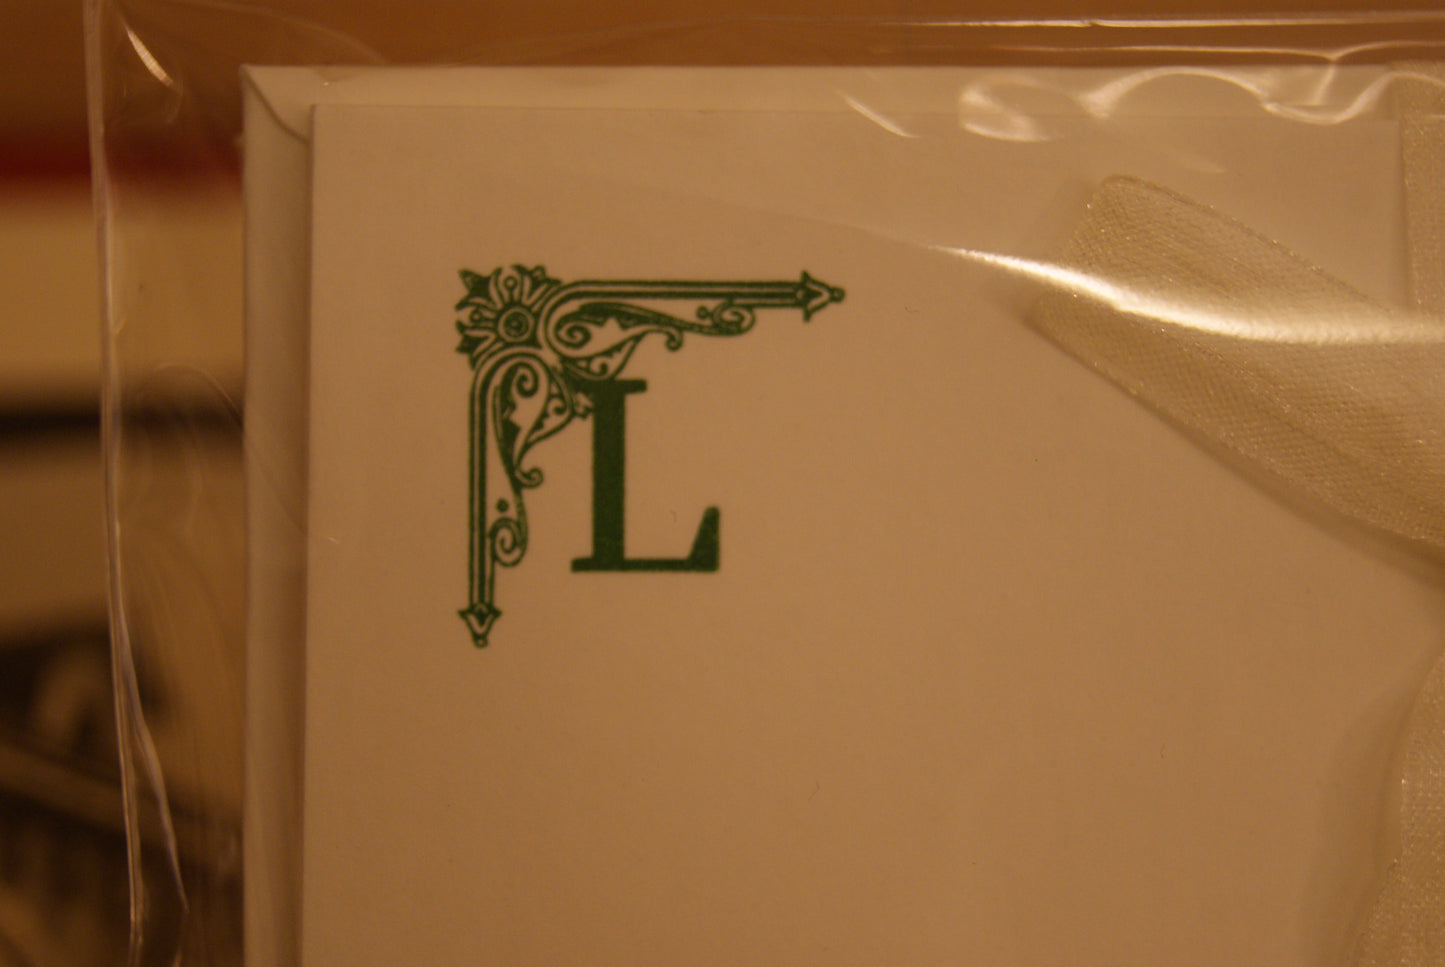 5 Cartoncini con iniziali tipografiche, con buste - 6 x 10 cm